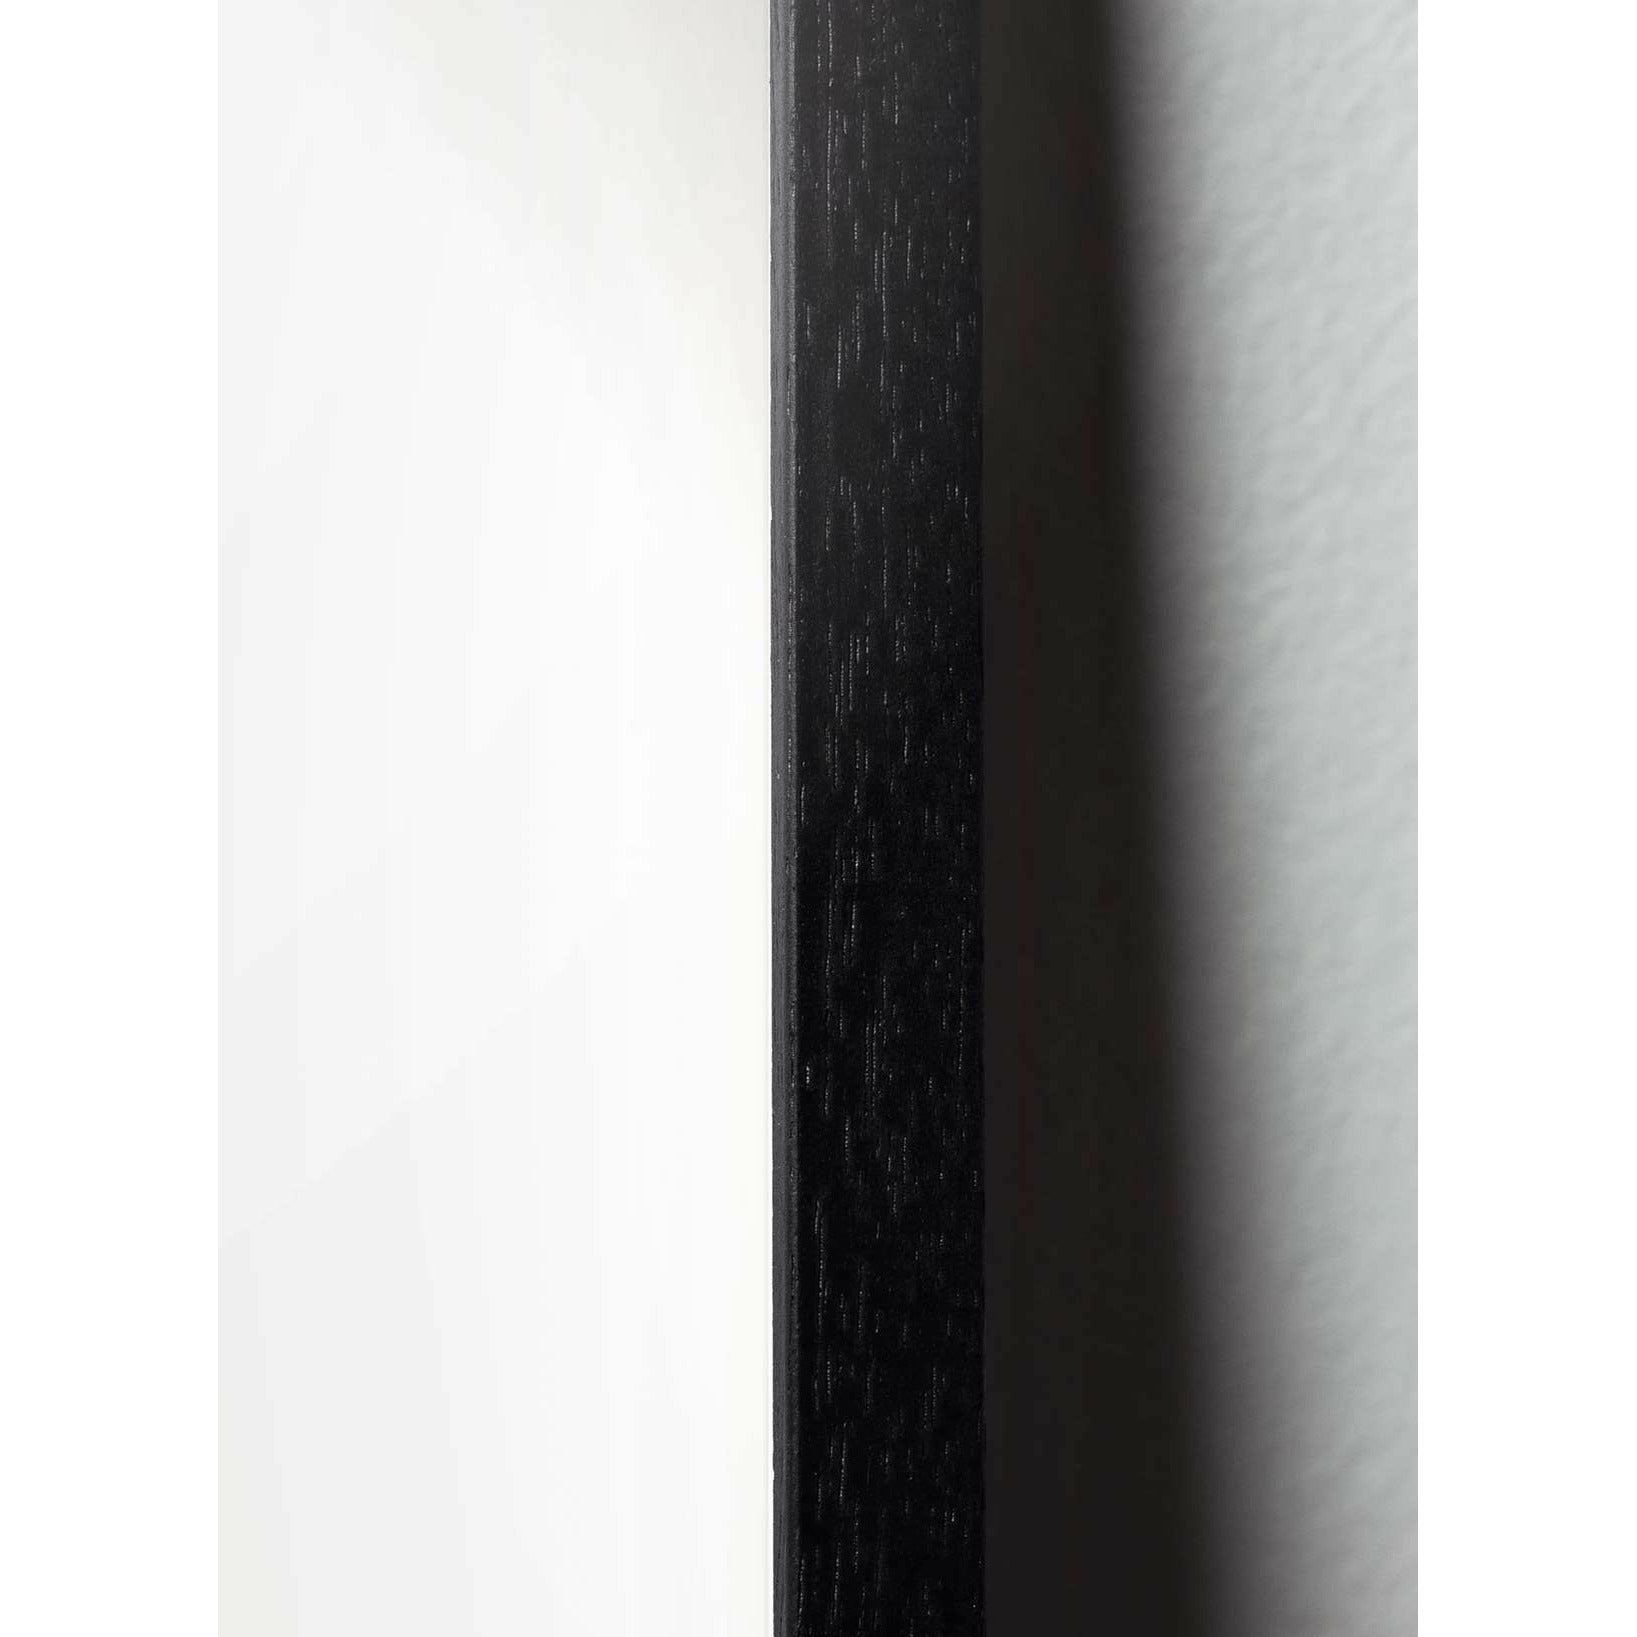 Plakát Ant Line Brainchild, rám v černém lakovaném dřevu 50x70 cm, bílé pozadí